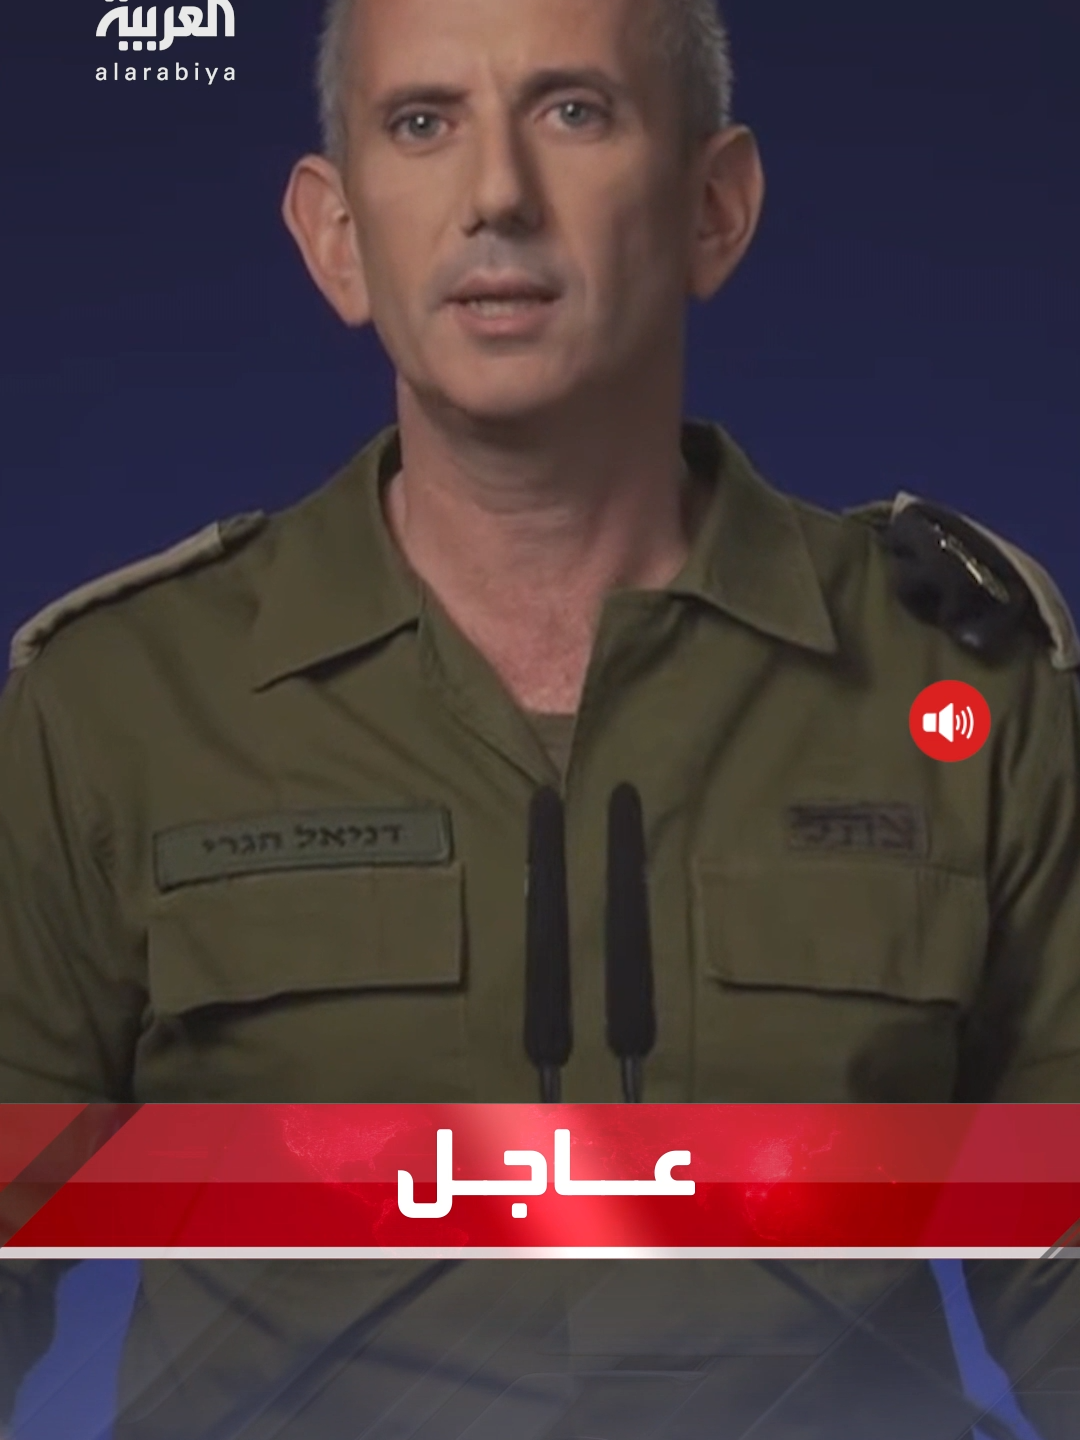 الجيش الإسرائيلي: قادرون على الوصول بعيدا في ردنا على التهديدات #إسرائيل #العربية